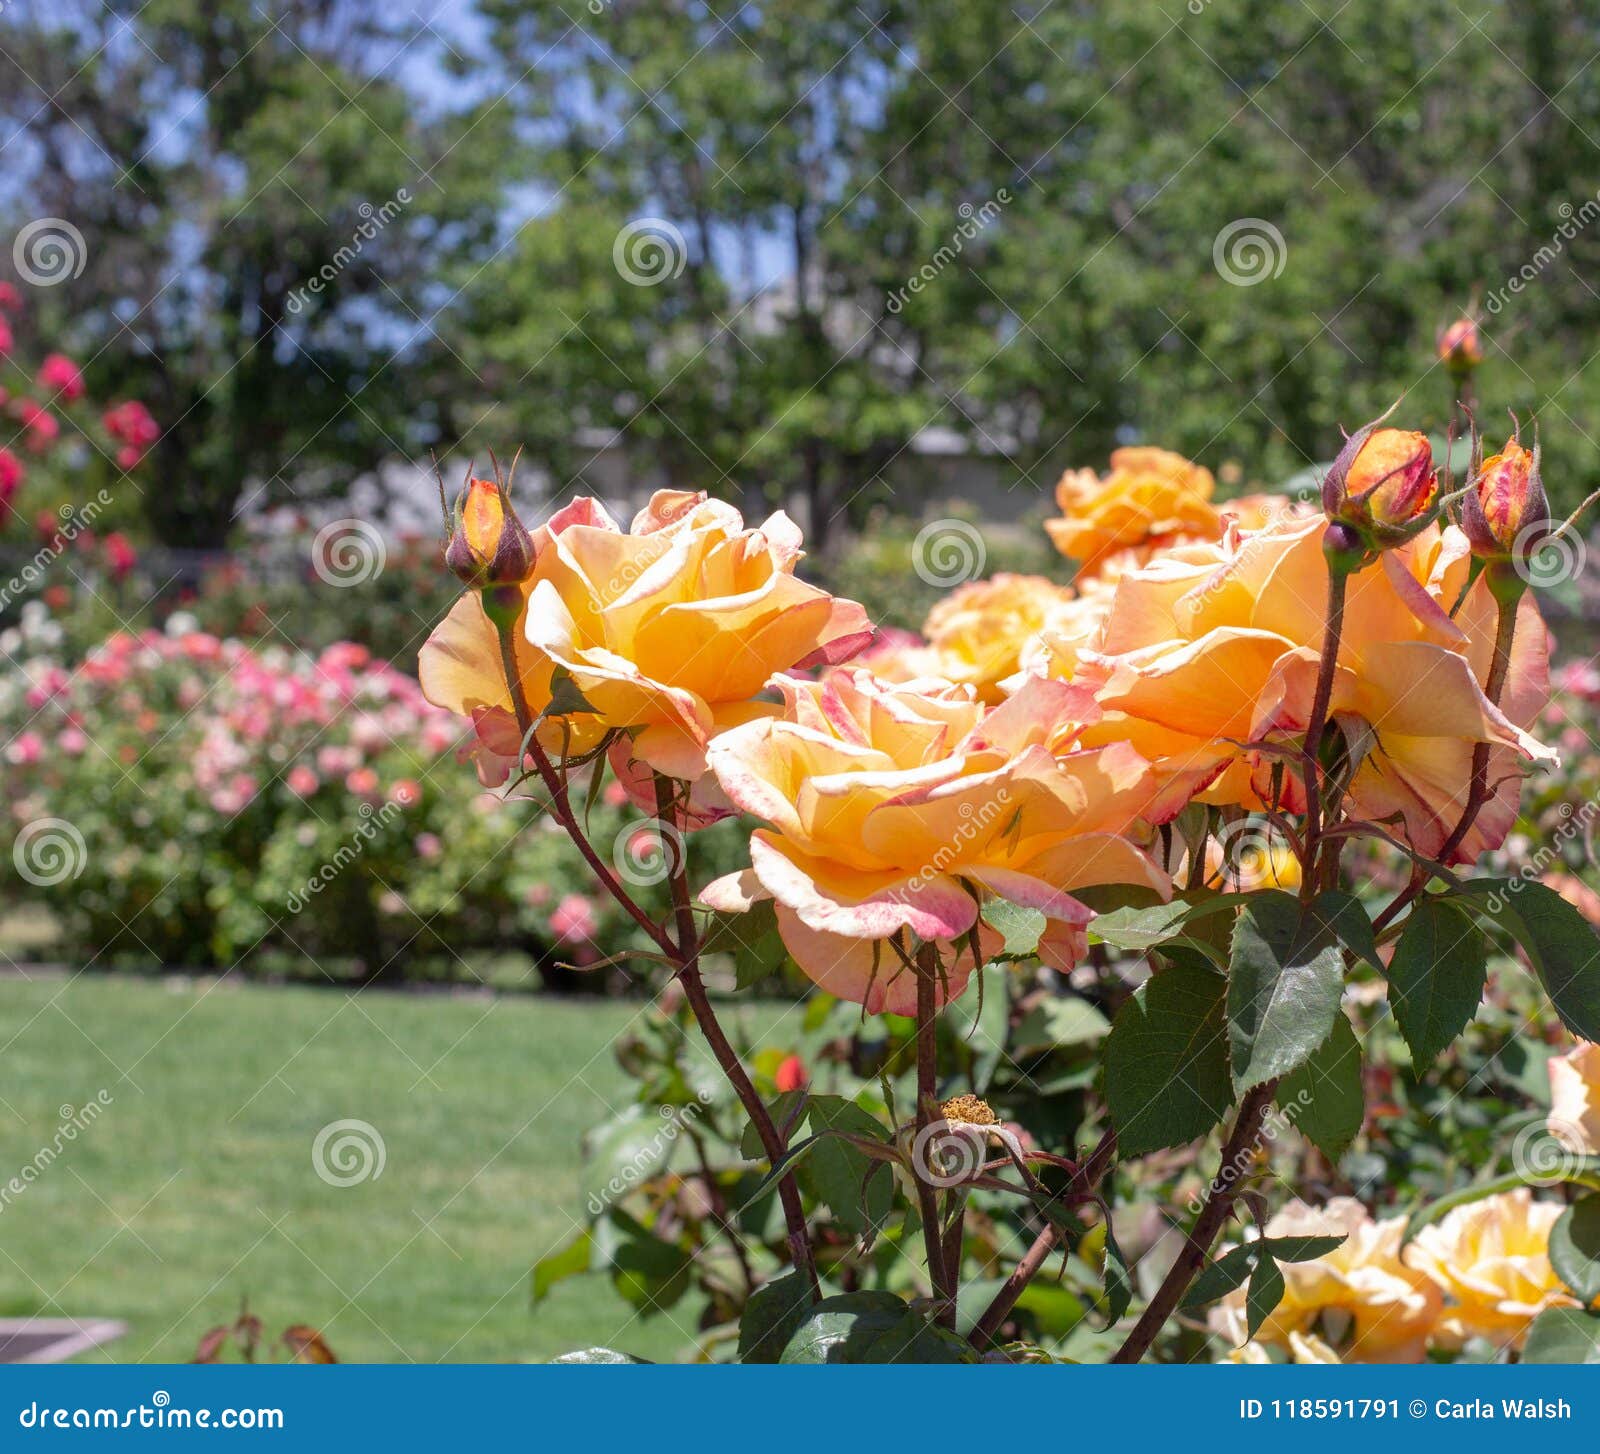 Orange Roses San Jose Rose Garden San Jose Ca Stock Image